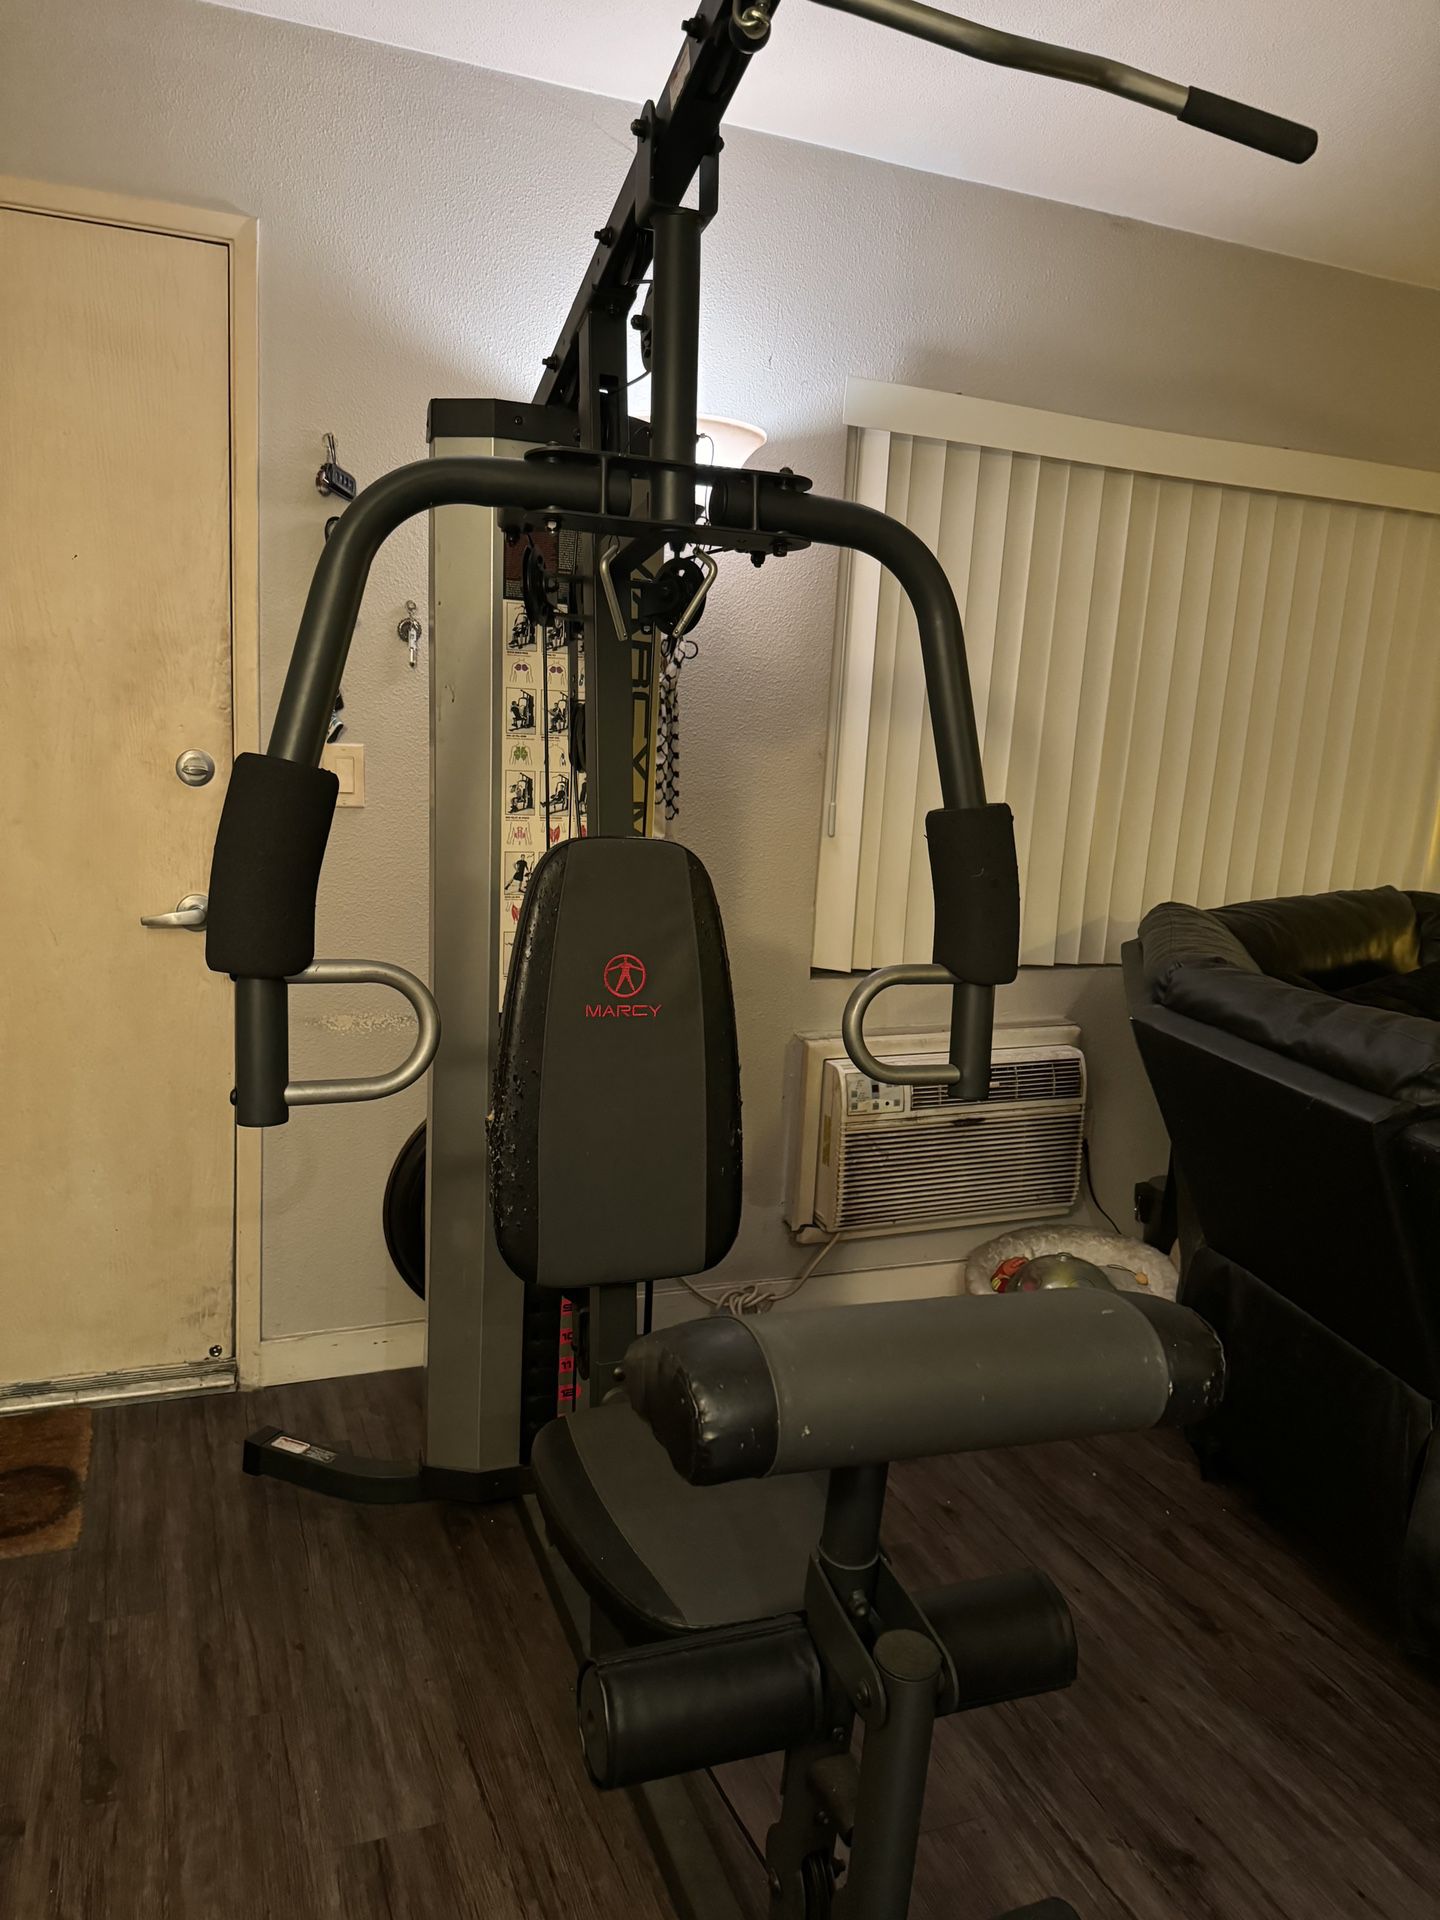 Gym/ Weight Machine 